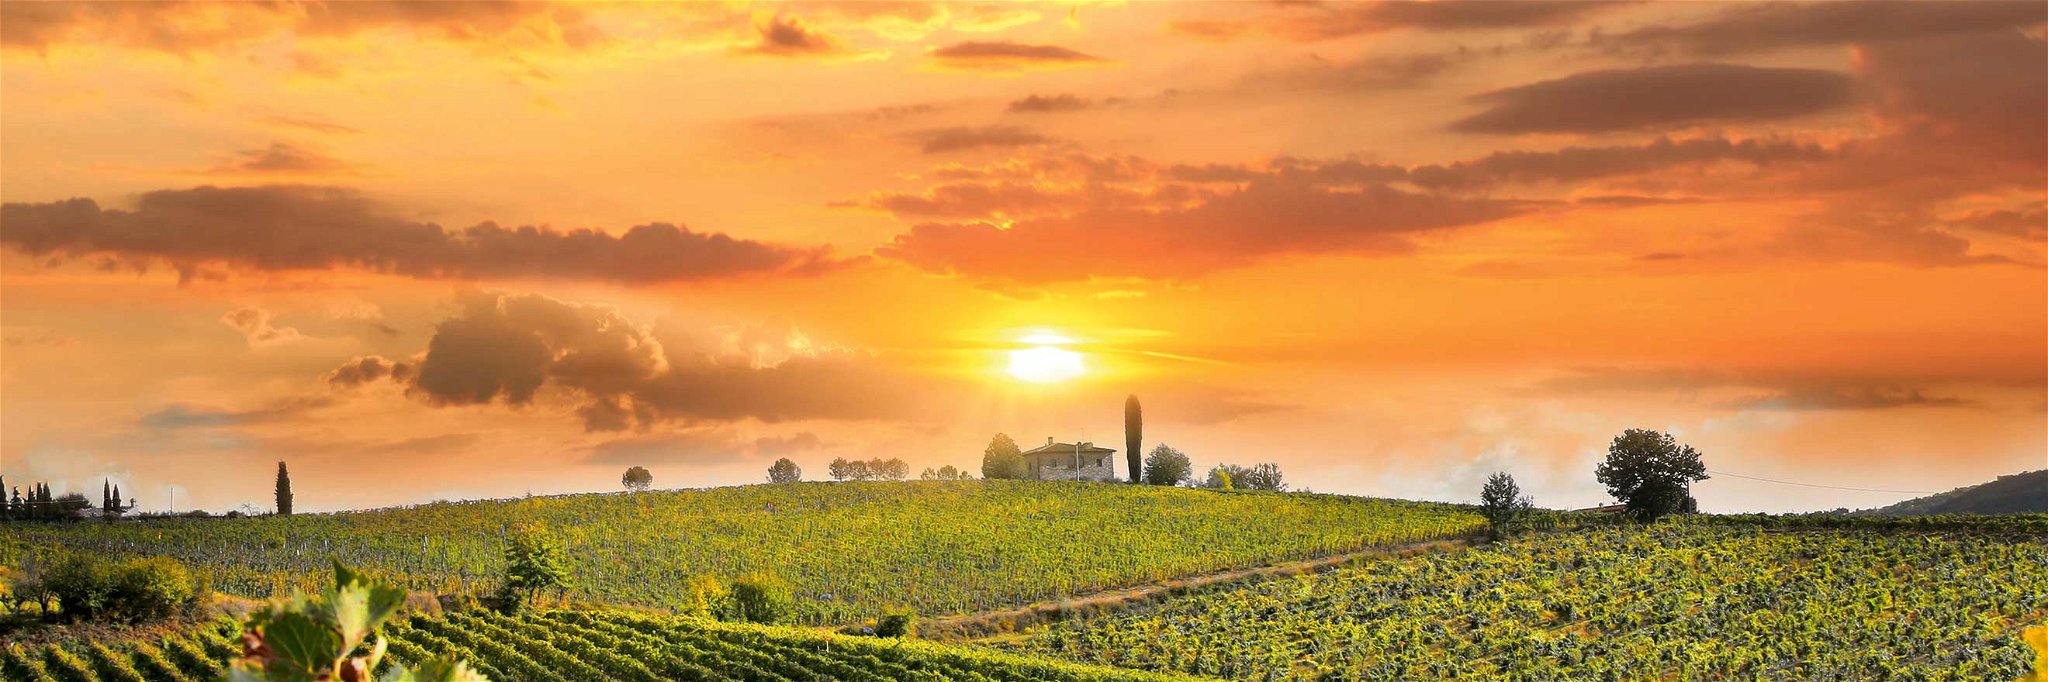 Die romantischen Sonnenuntergänge über&nbsp; den Weinbergen der Toskana laden dazu ein, die Seele baumeln zu lassen.